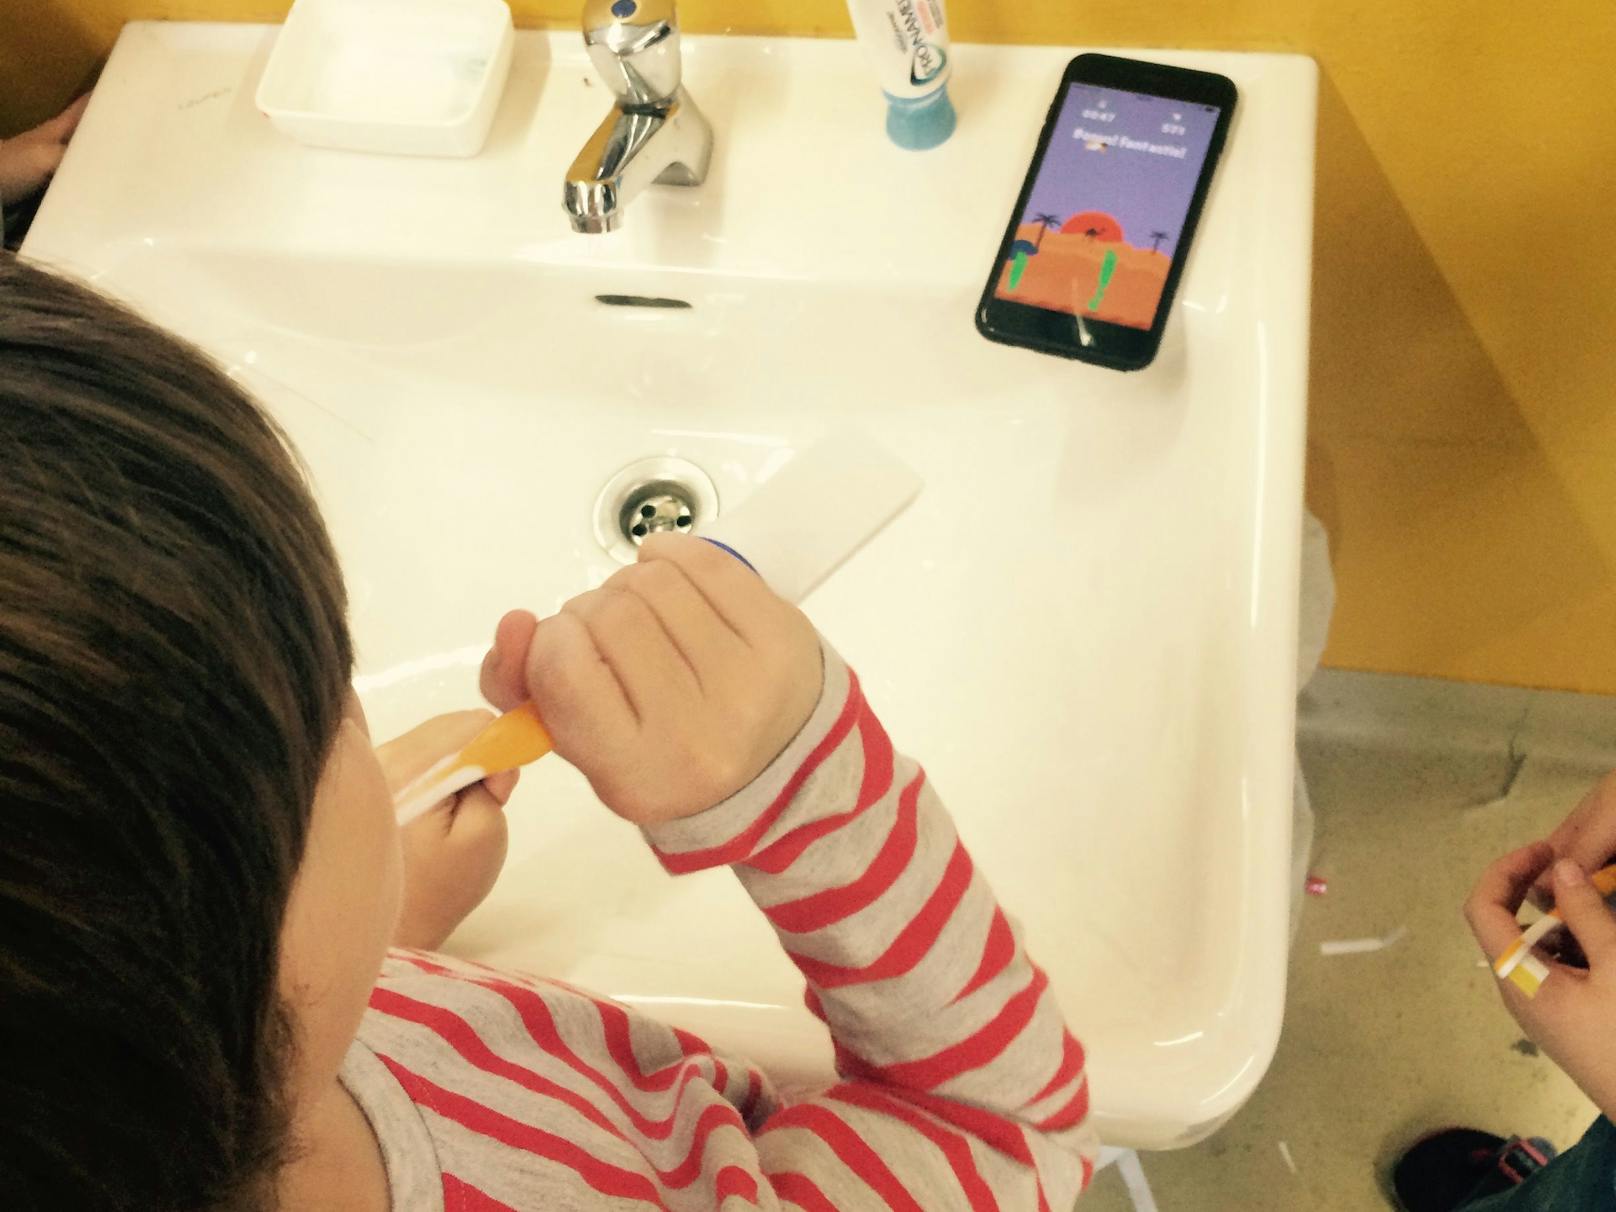 Per Bluetooth steht die Zahnbürste mit der Playbrush-App auf dem Smartphone in Verbindung und überträgt die Putzbewegungen in Spiele.